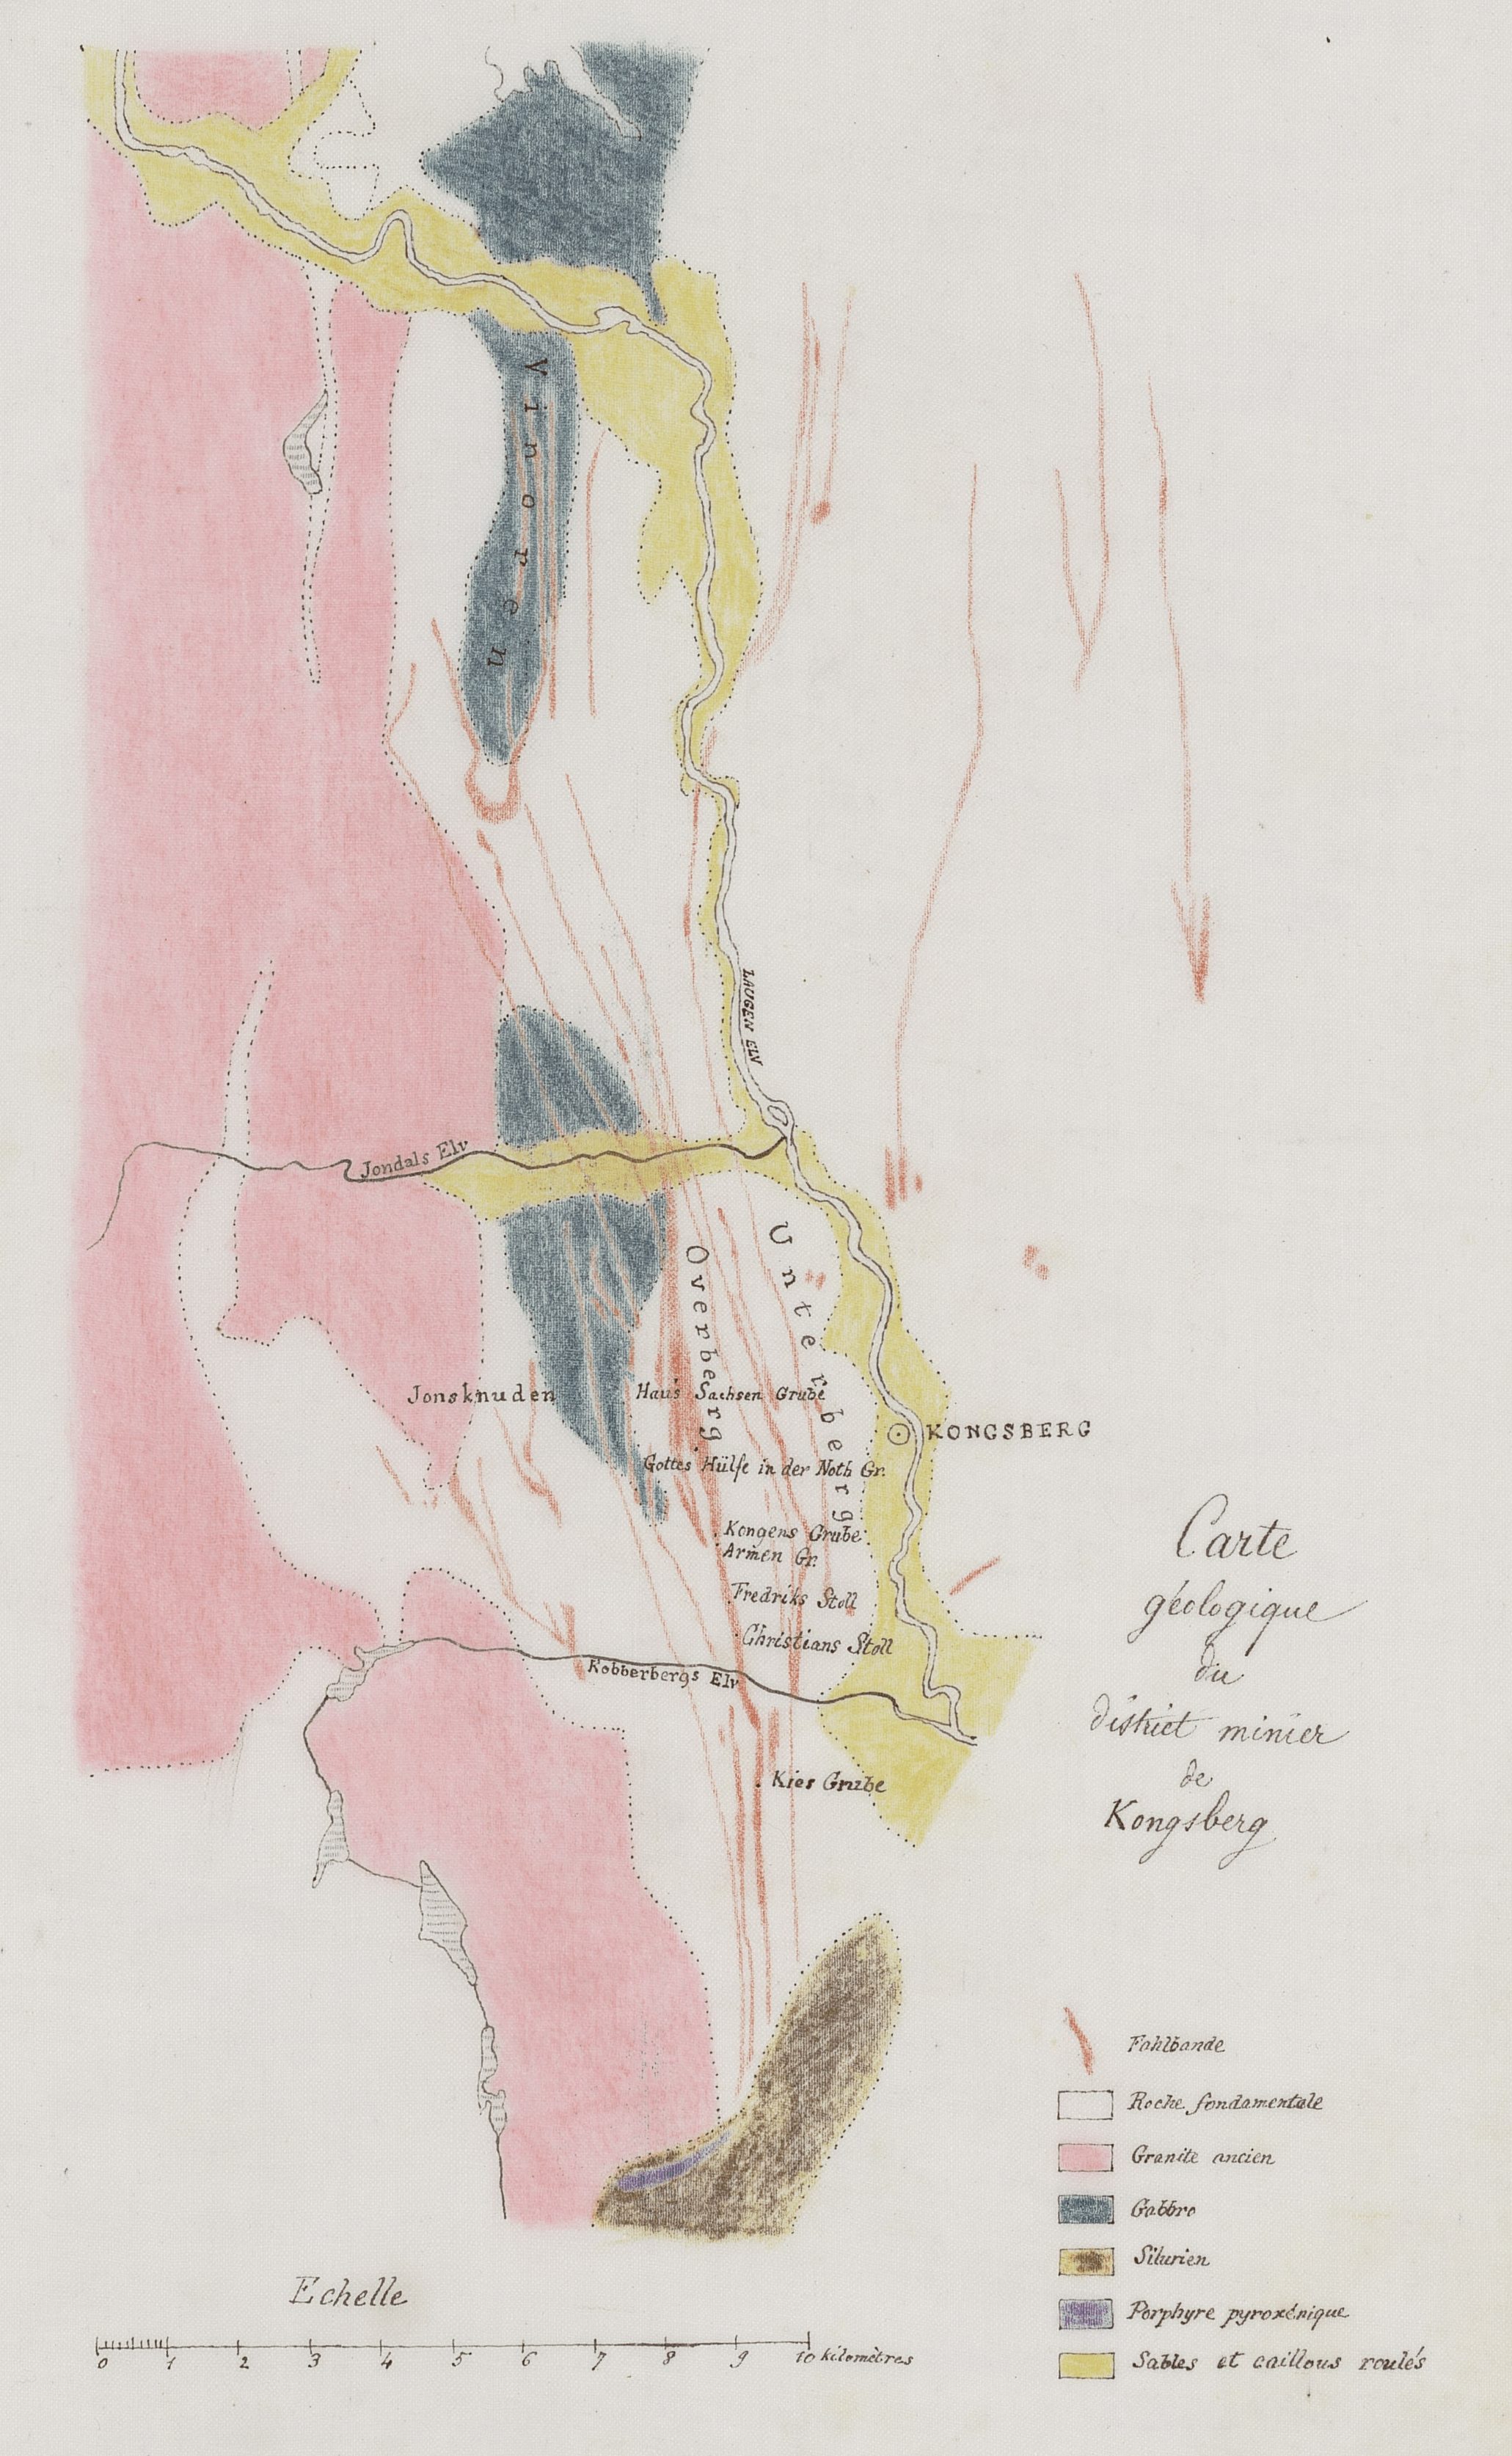 Carte géologique de Kongsberg, Lucien Fèvre, 1886, M 1886 (1061)